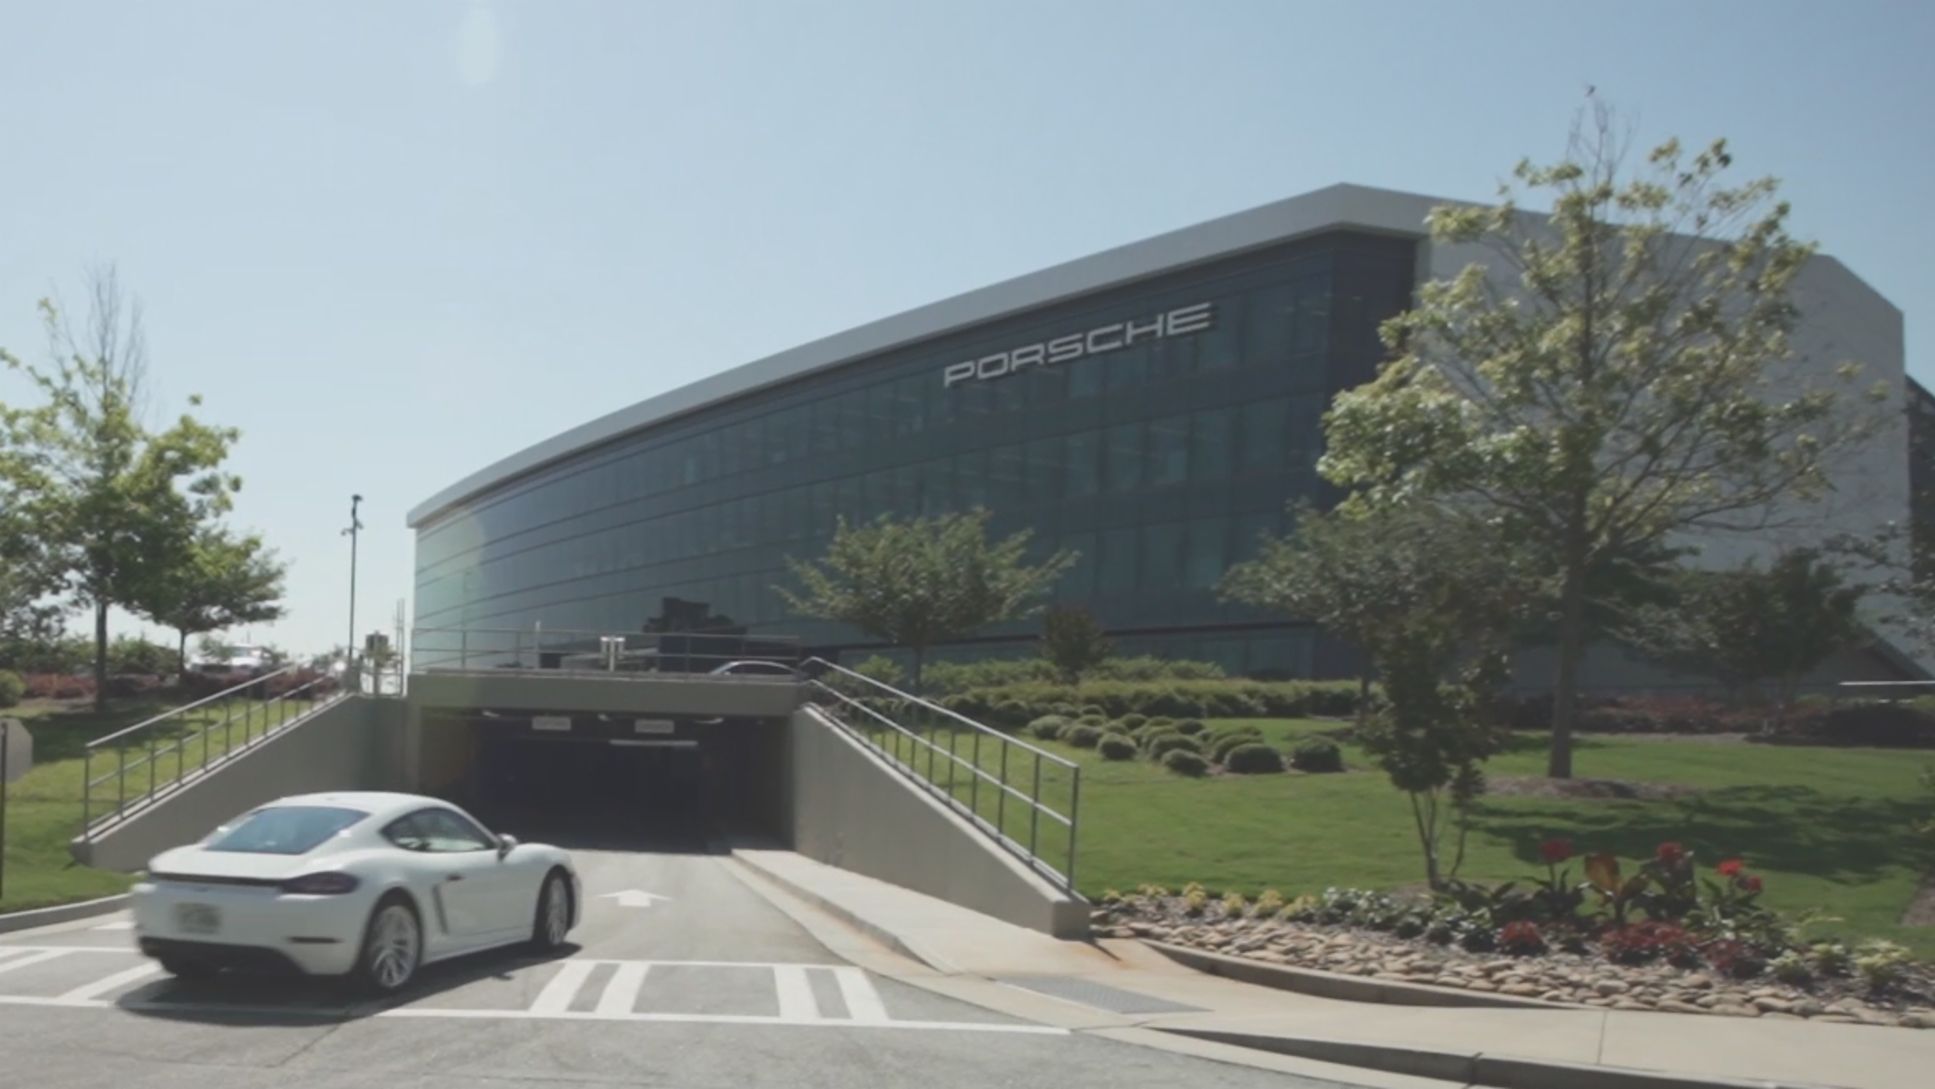 Office Atlanta, 2019, Porsche Consulting GmbH